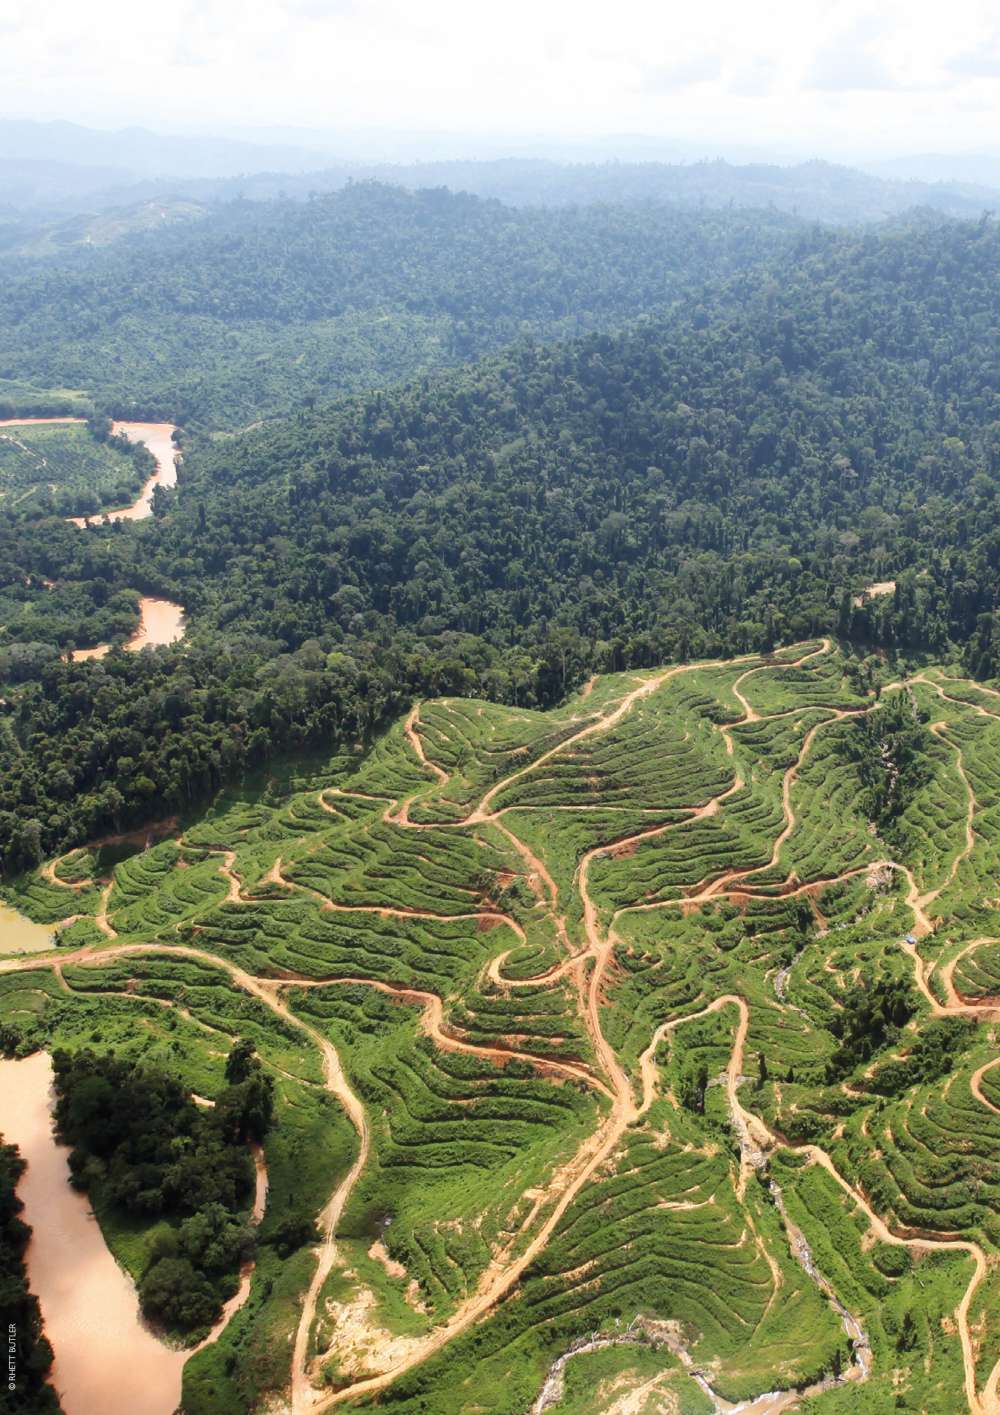 Deforestation in the rainforest